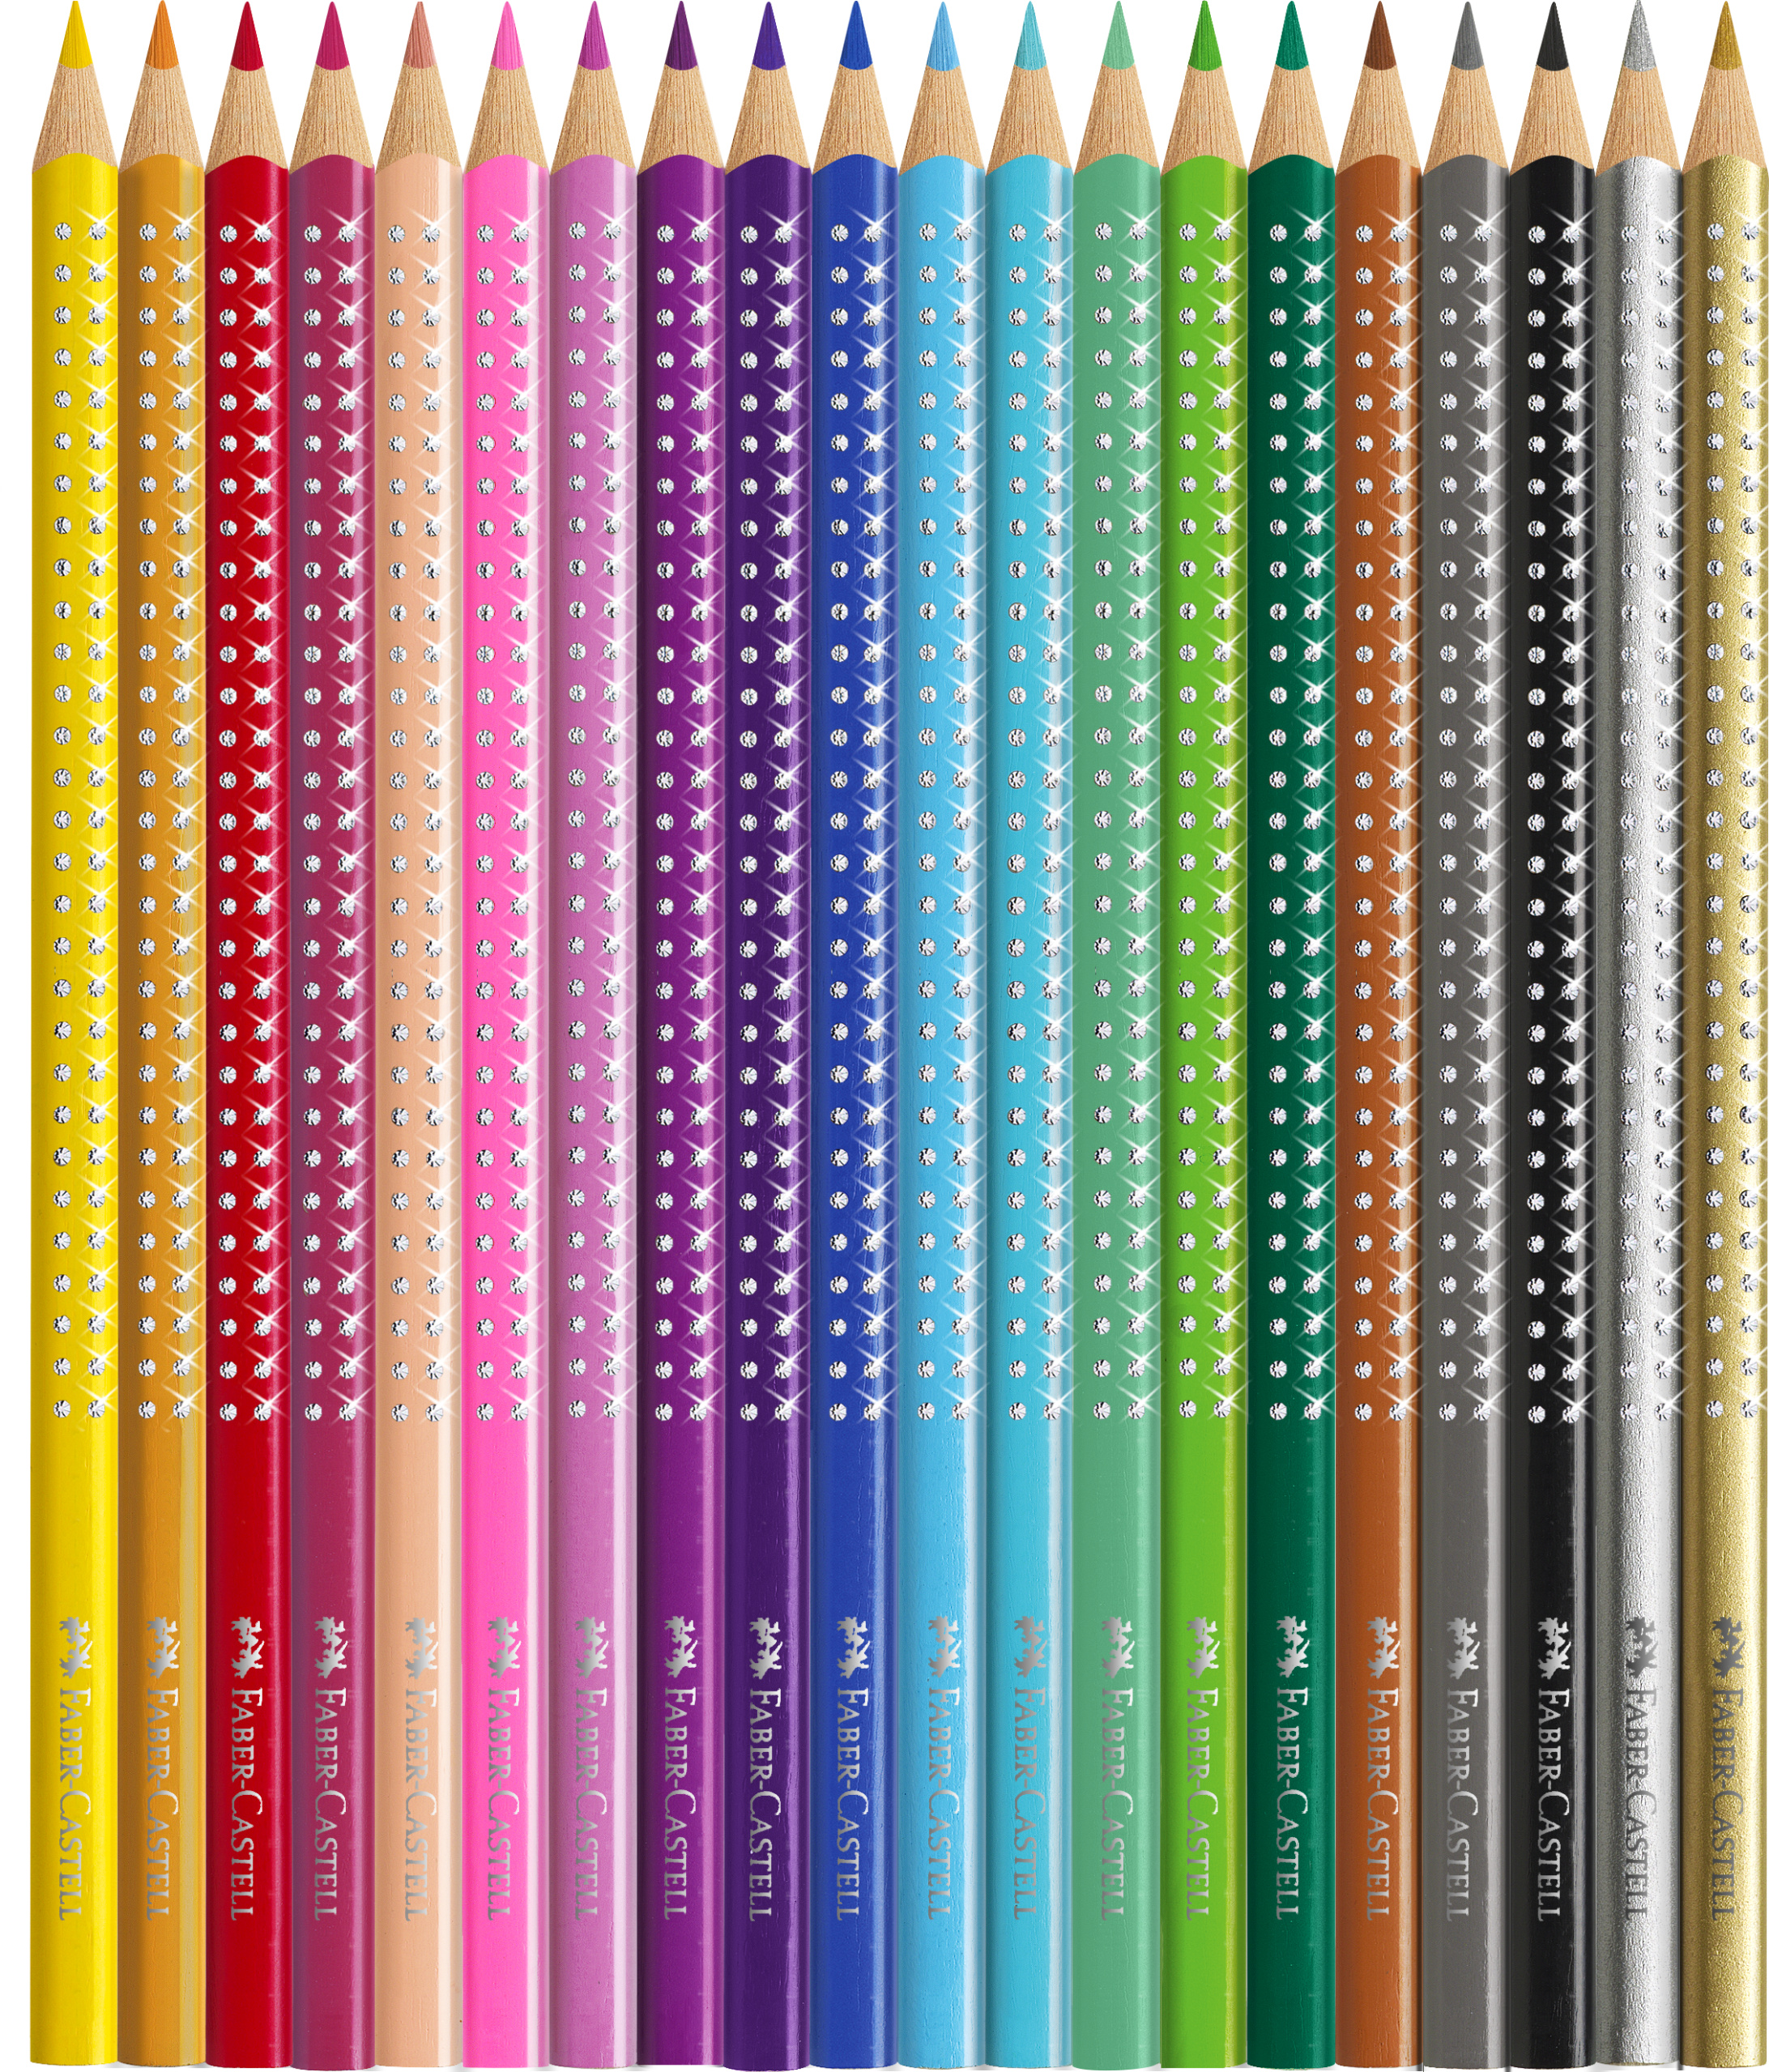 Набор карандашей цветных Faber-castell 